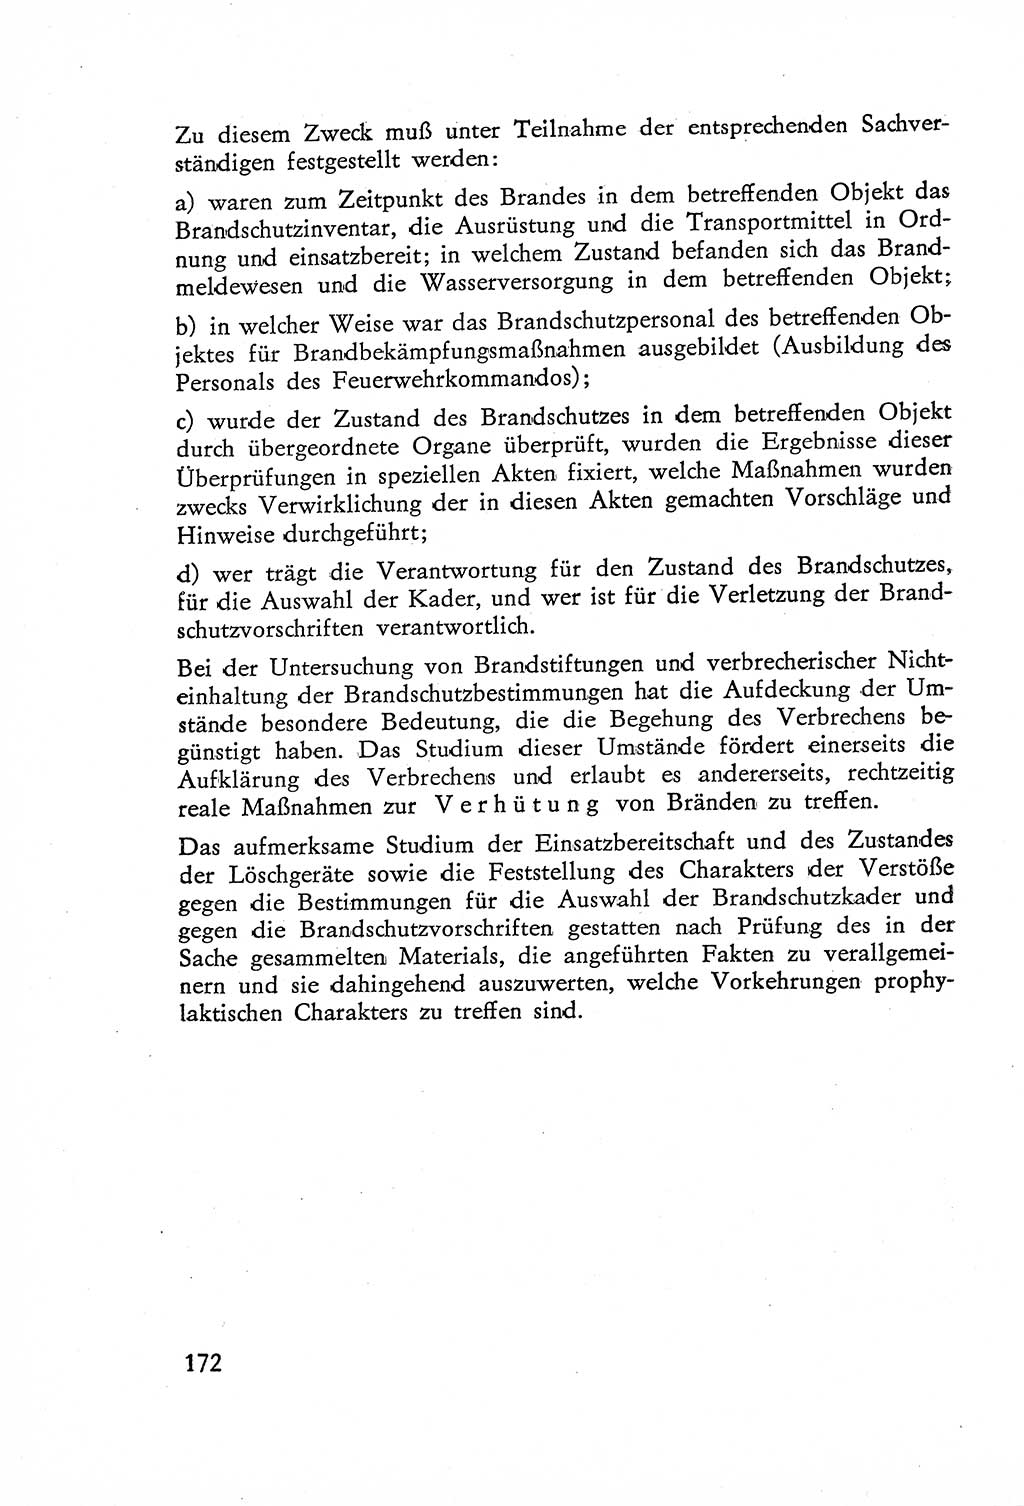 Die Untersuchung einzelner Verbrechensarten [Deutsche Demokratische Republik (DDR)] 1960, Seite 172 (Unters. Verbr.-Art. DDR 1960, S. 172)